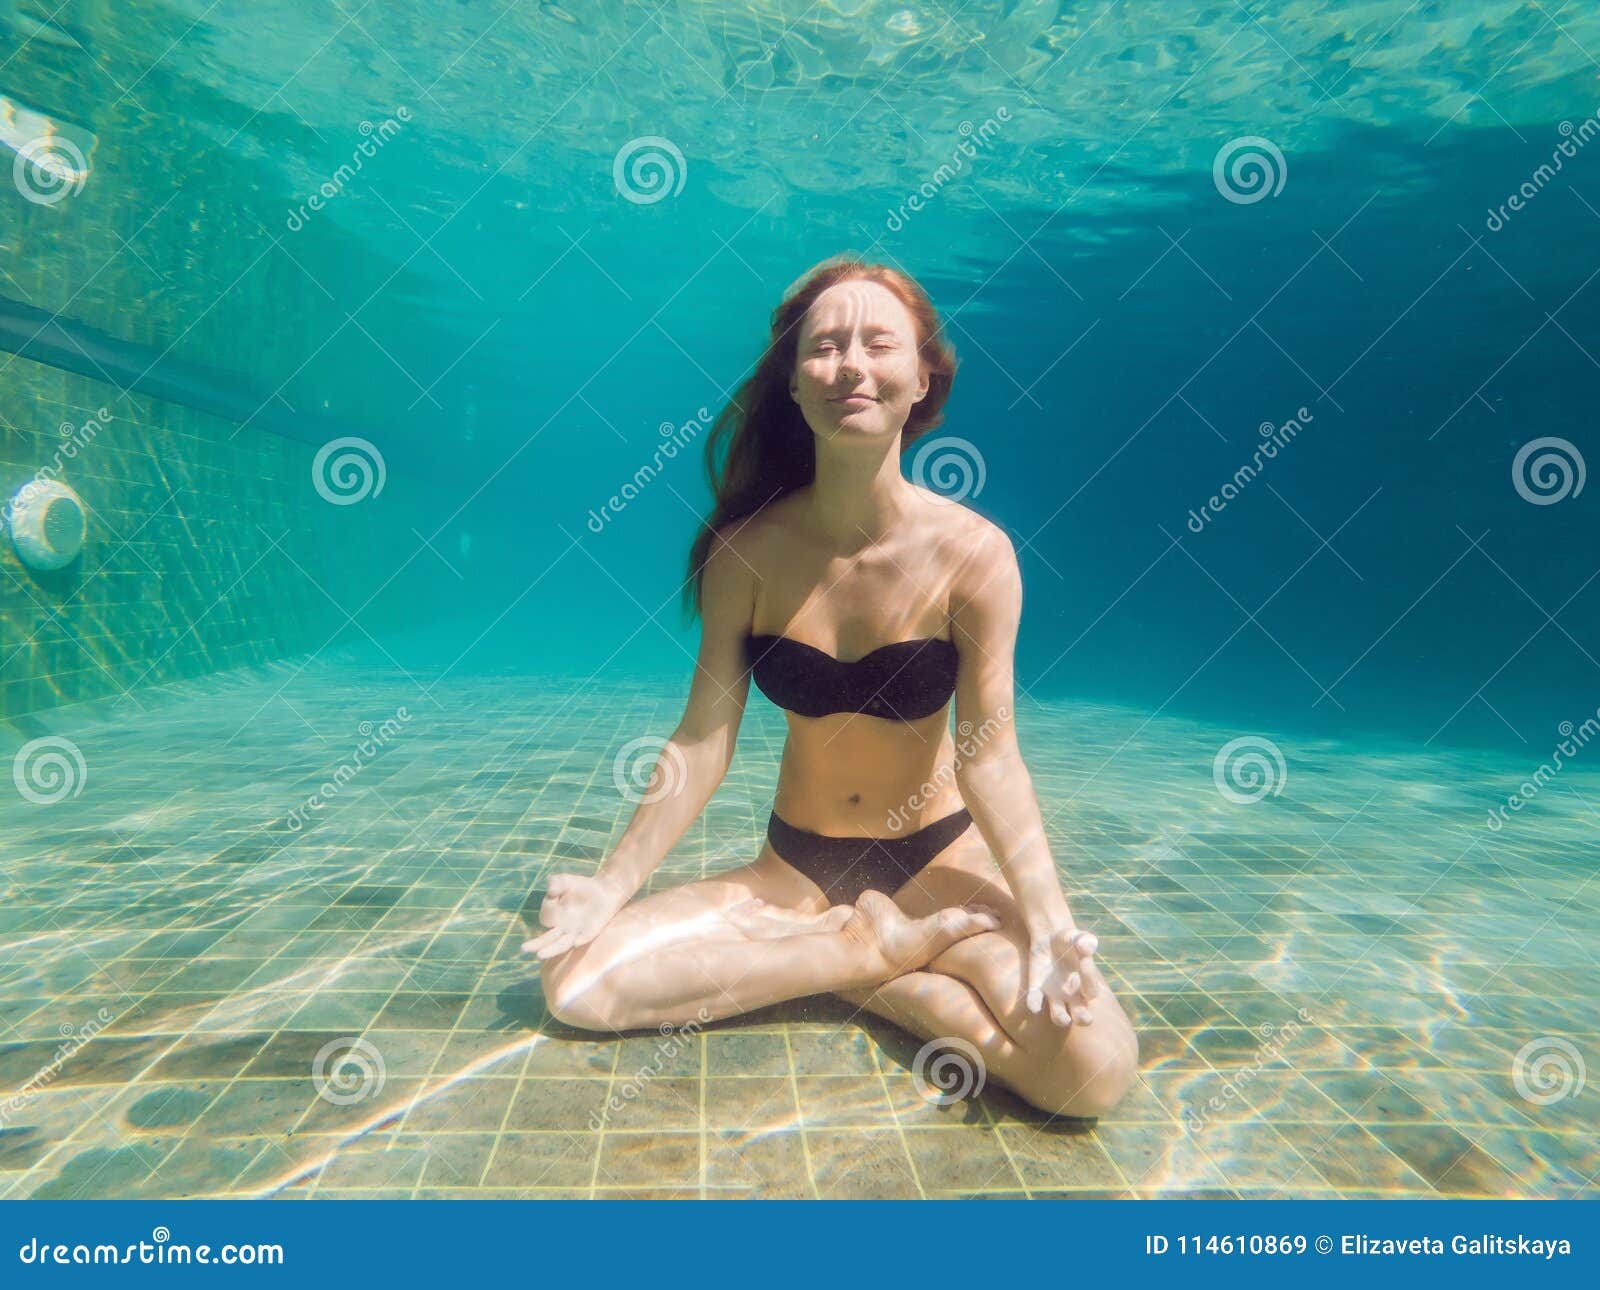 Underwater Black Bikini Girl